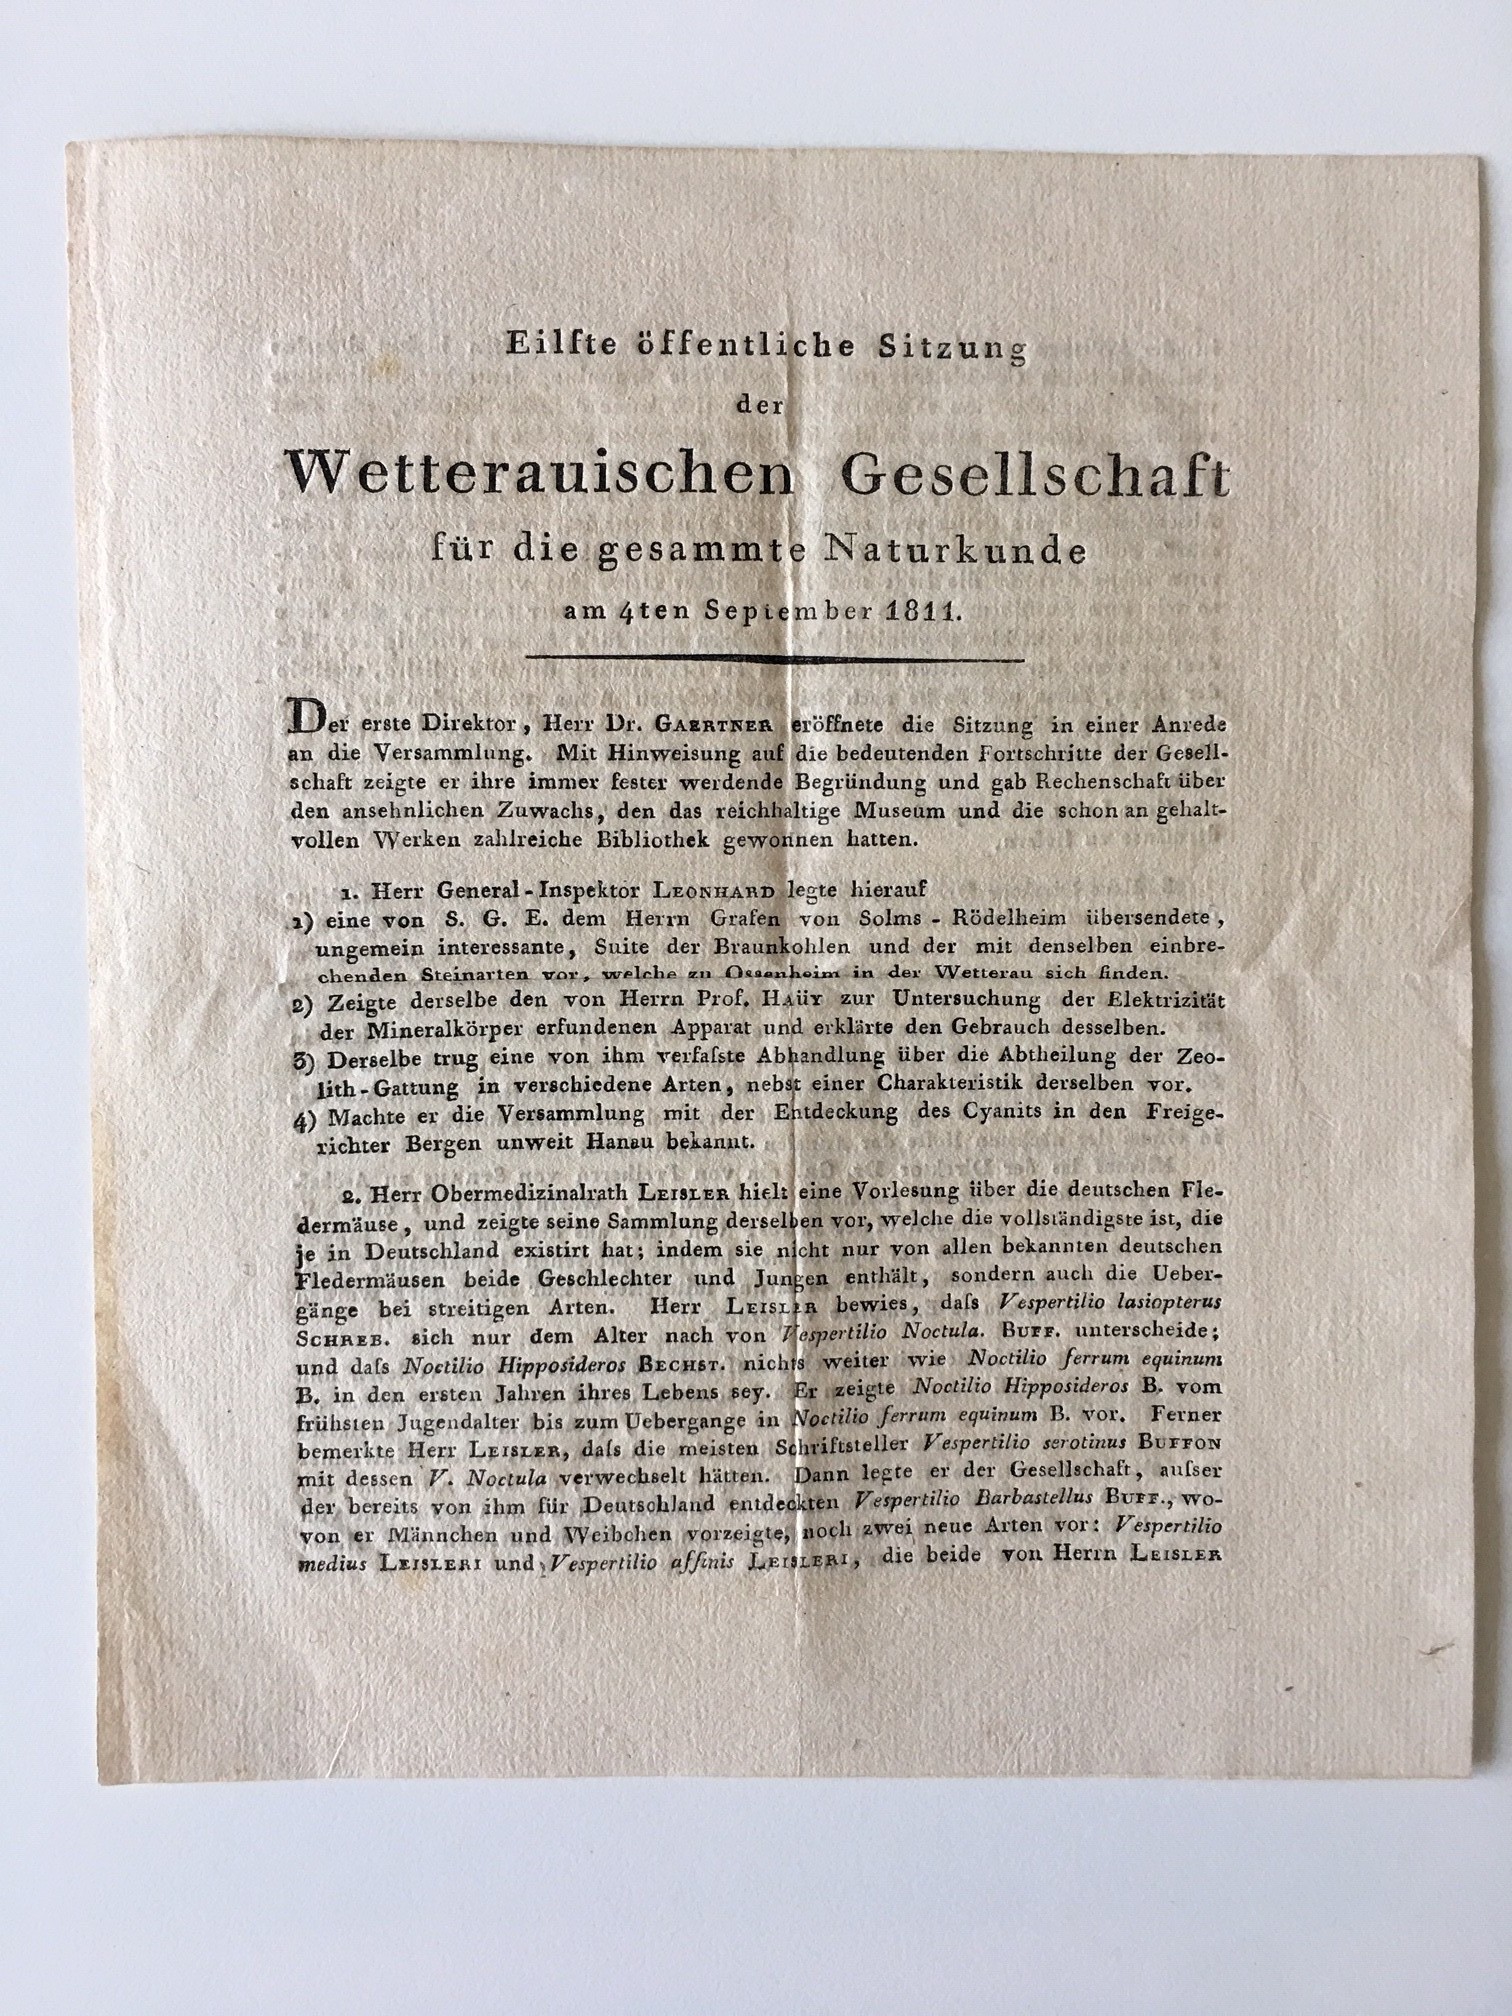 Wetterauische Gesellschaft, Protokoll, Eilfte öffentliche Sitzung am 4. September 1811. (Taunus-Rhein-Main - Regionalgeschichtliche Sammlung Dr. Stefan Naas CC BY-NC-SA)